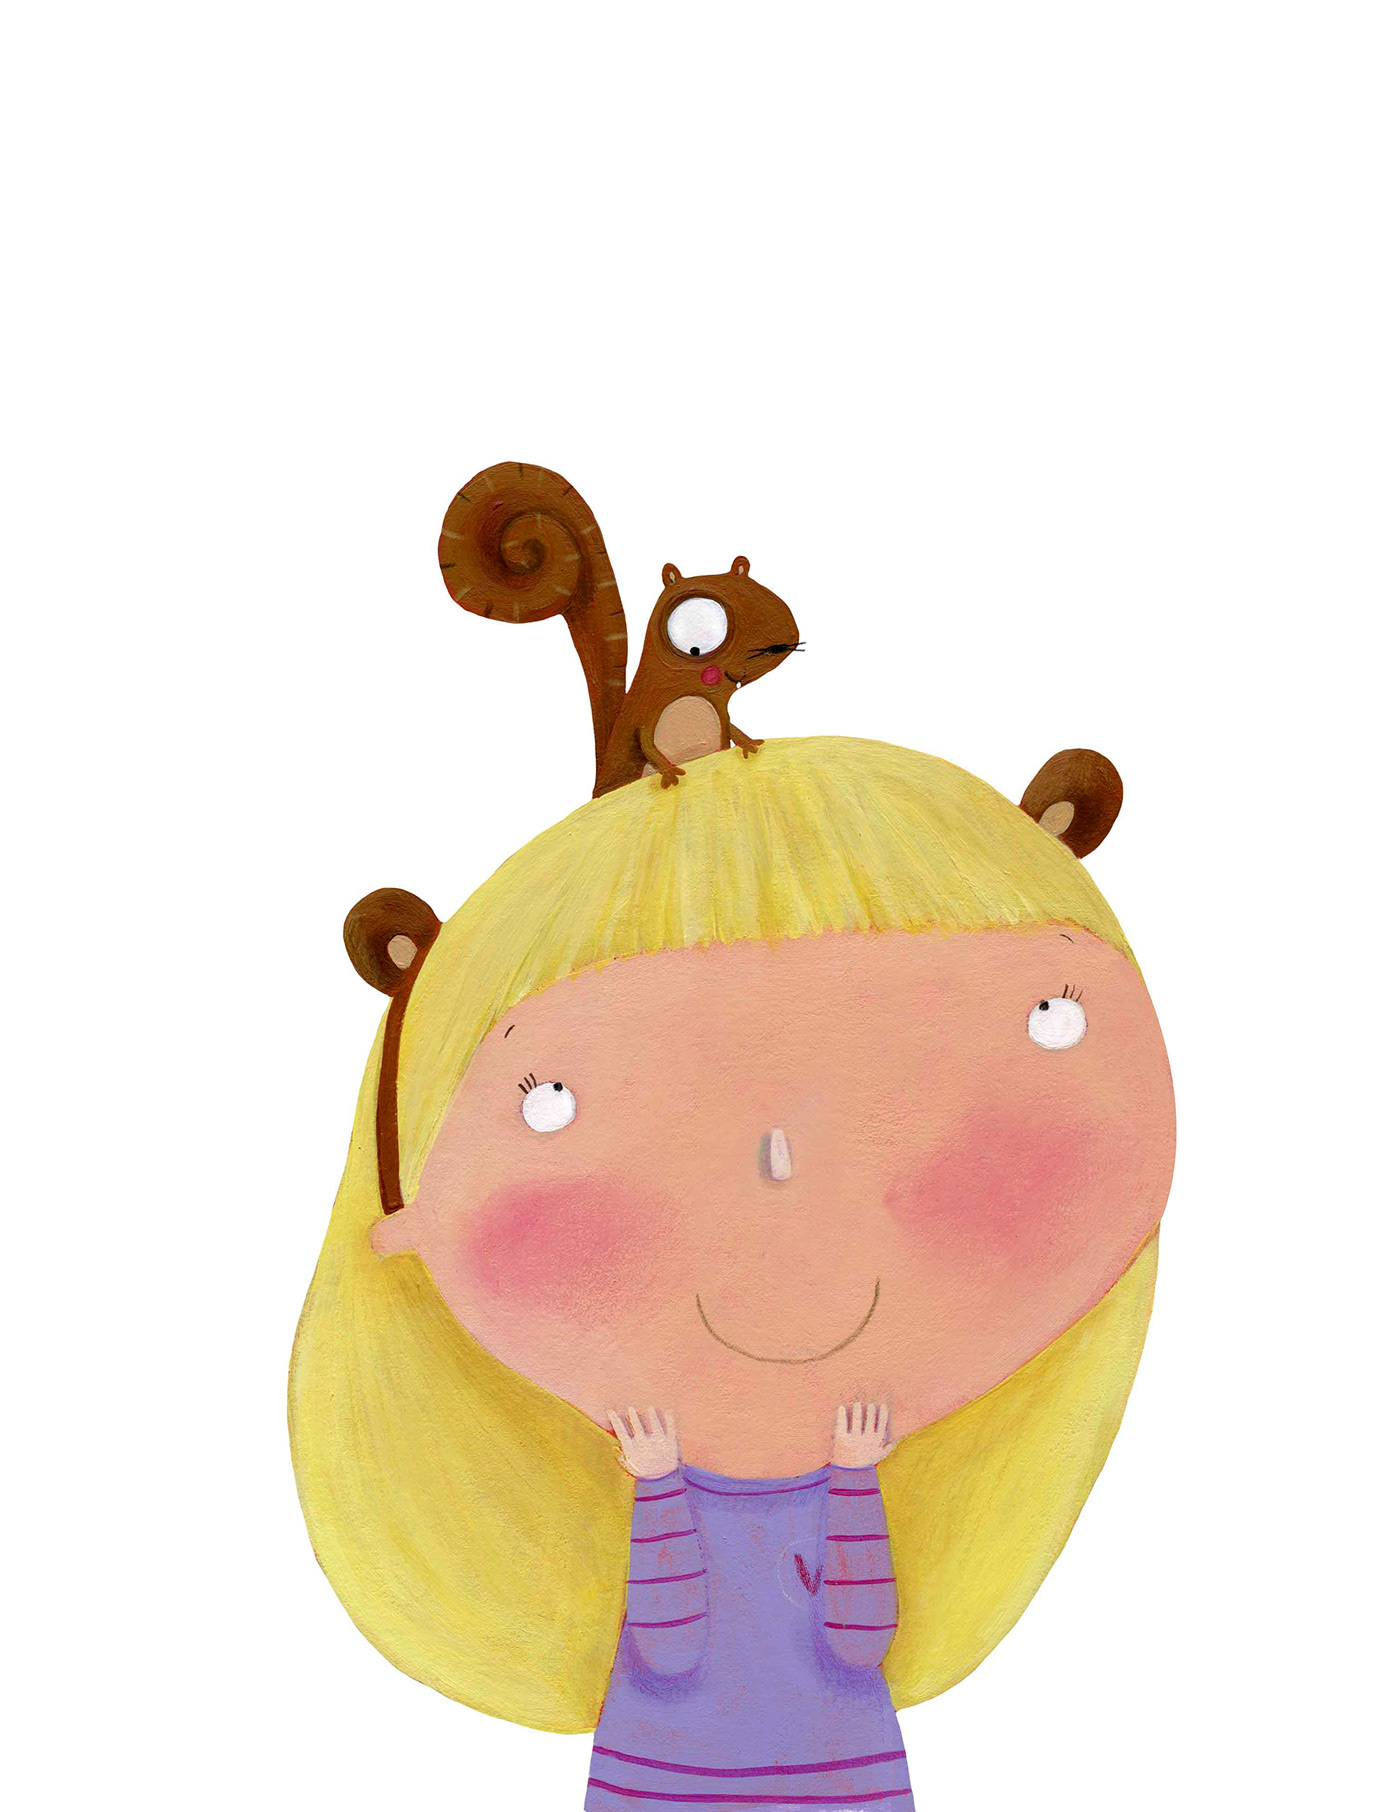 childrenbook libriperbambini meraviglia squirrel Scoiattolo wonder #childrensbooks